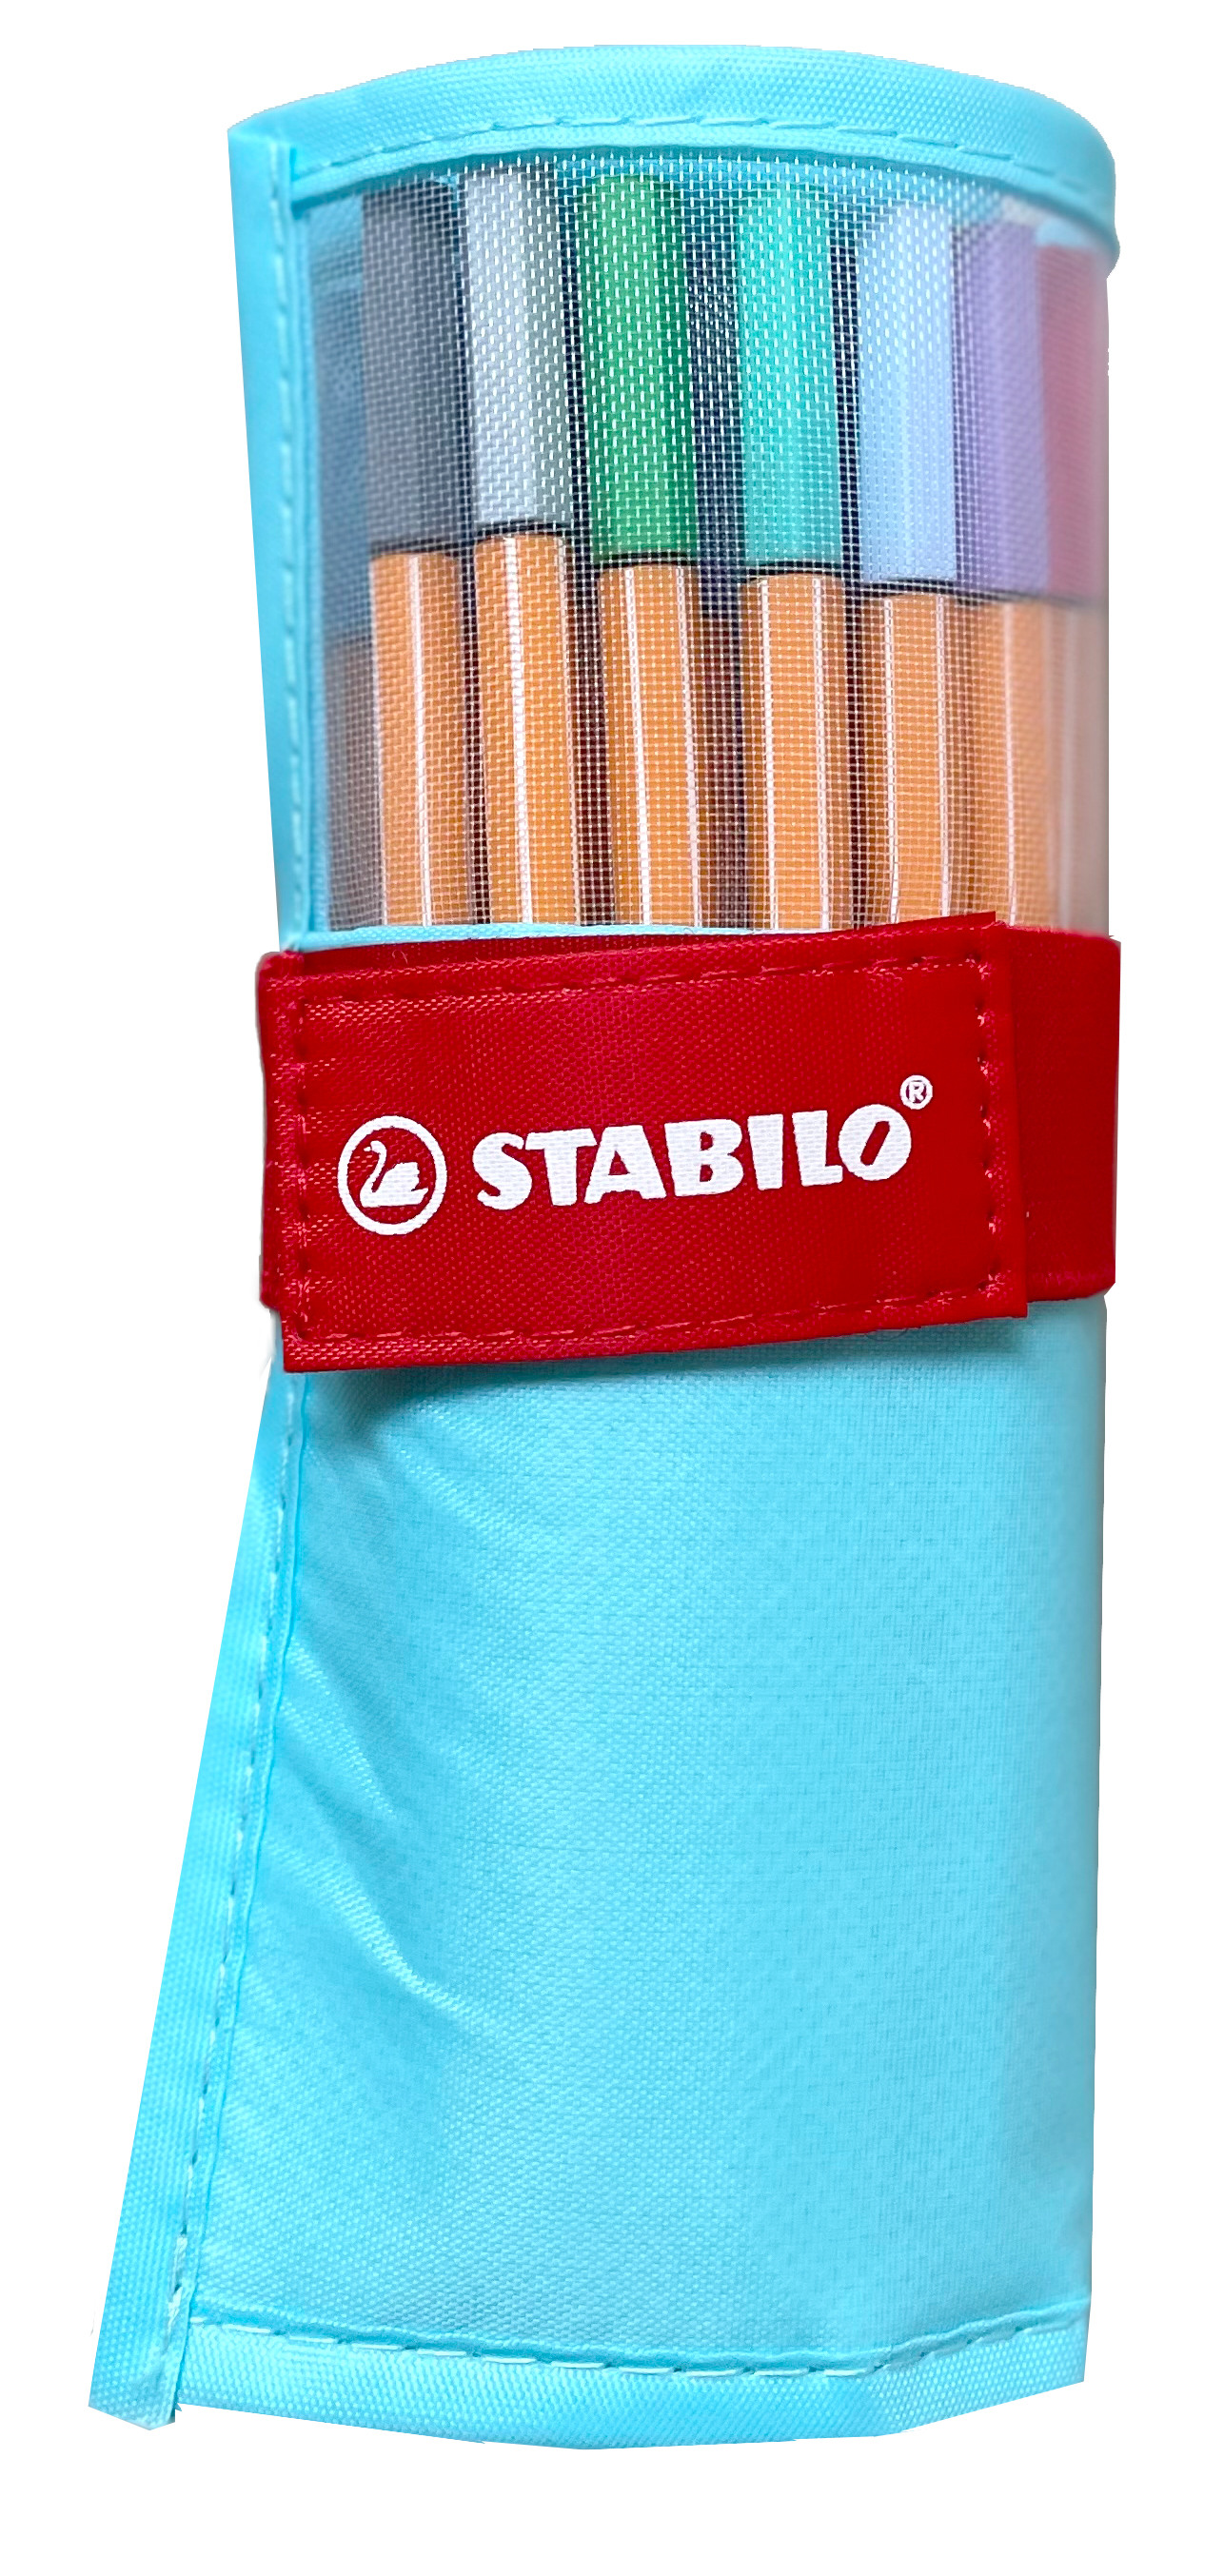 STABILO Rollerset point 88 0.4mm 8825-08-01CH 25 couleurs ass. bleu pastel